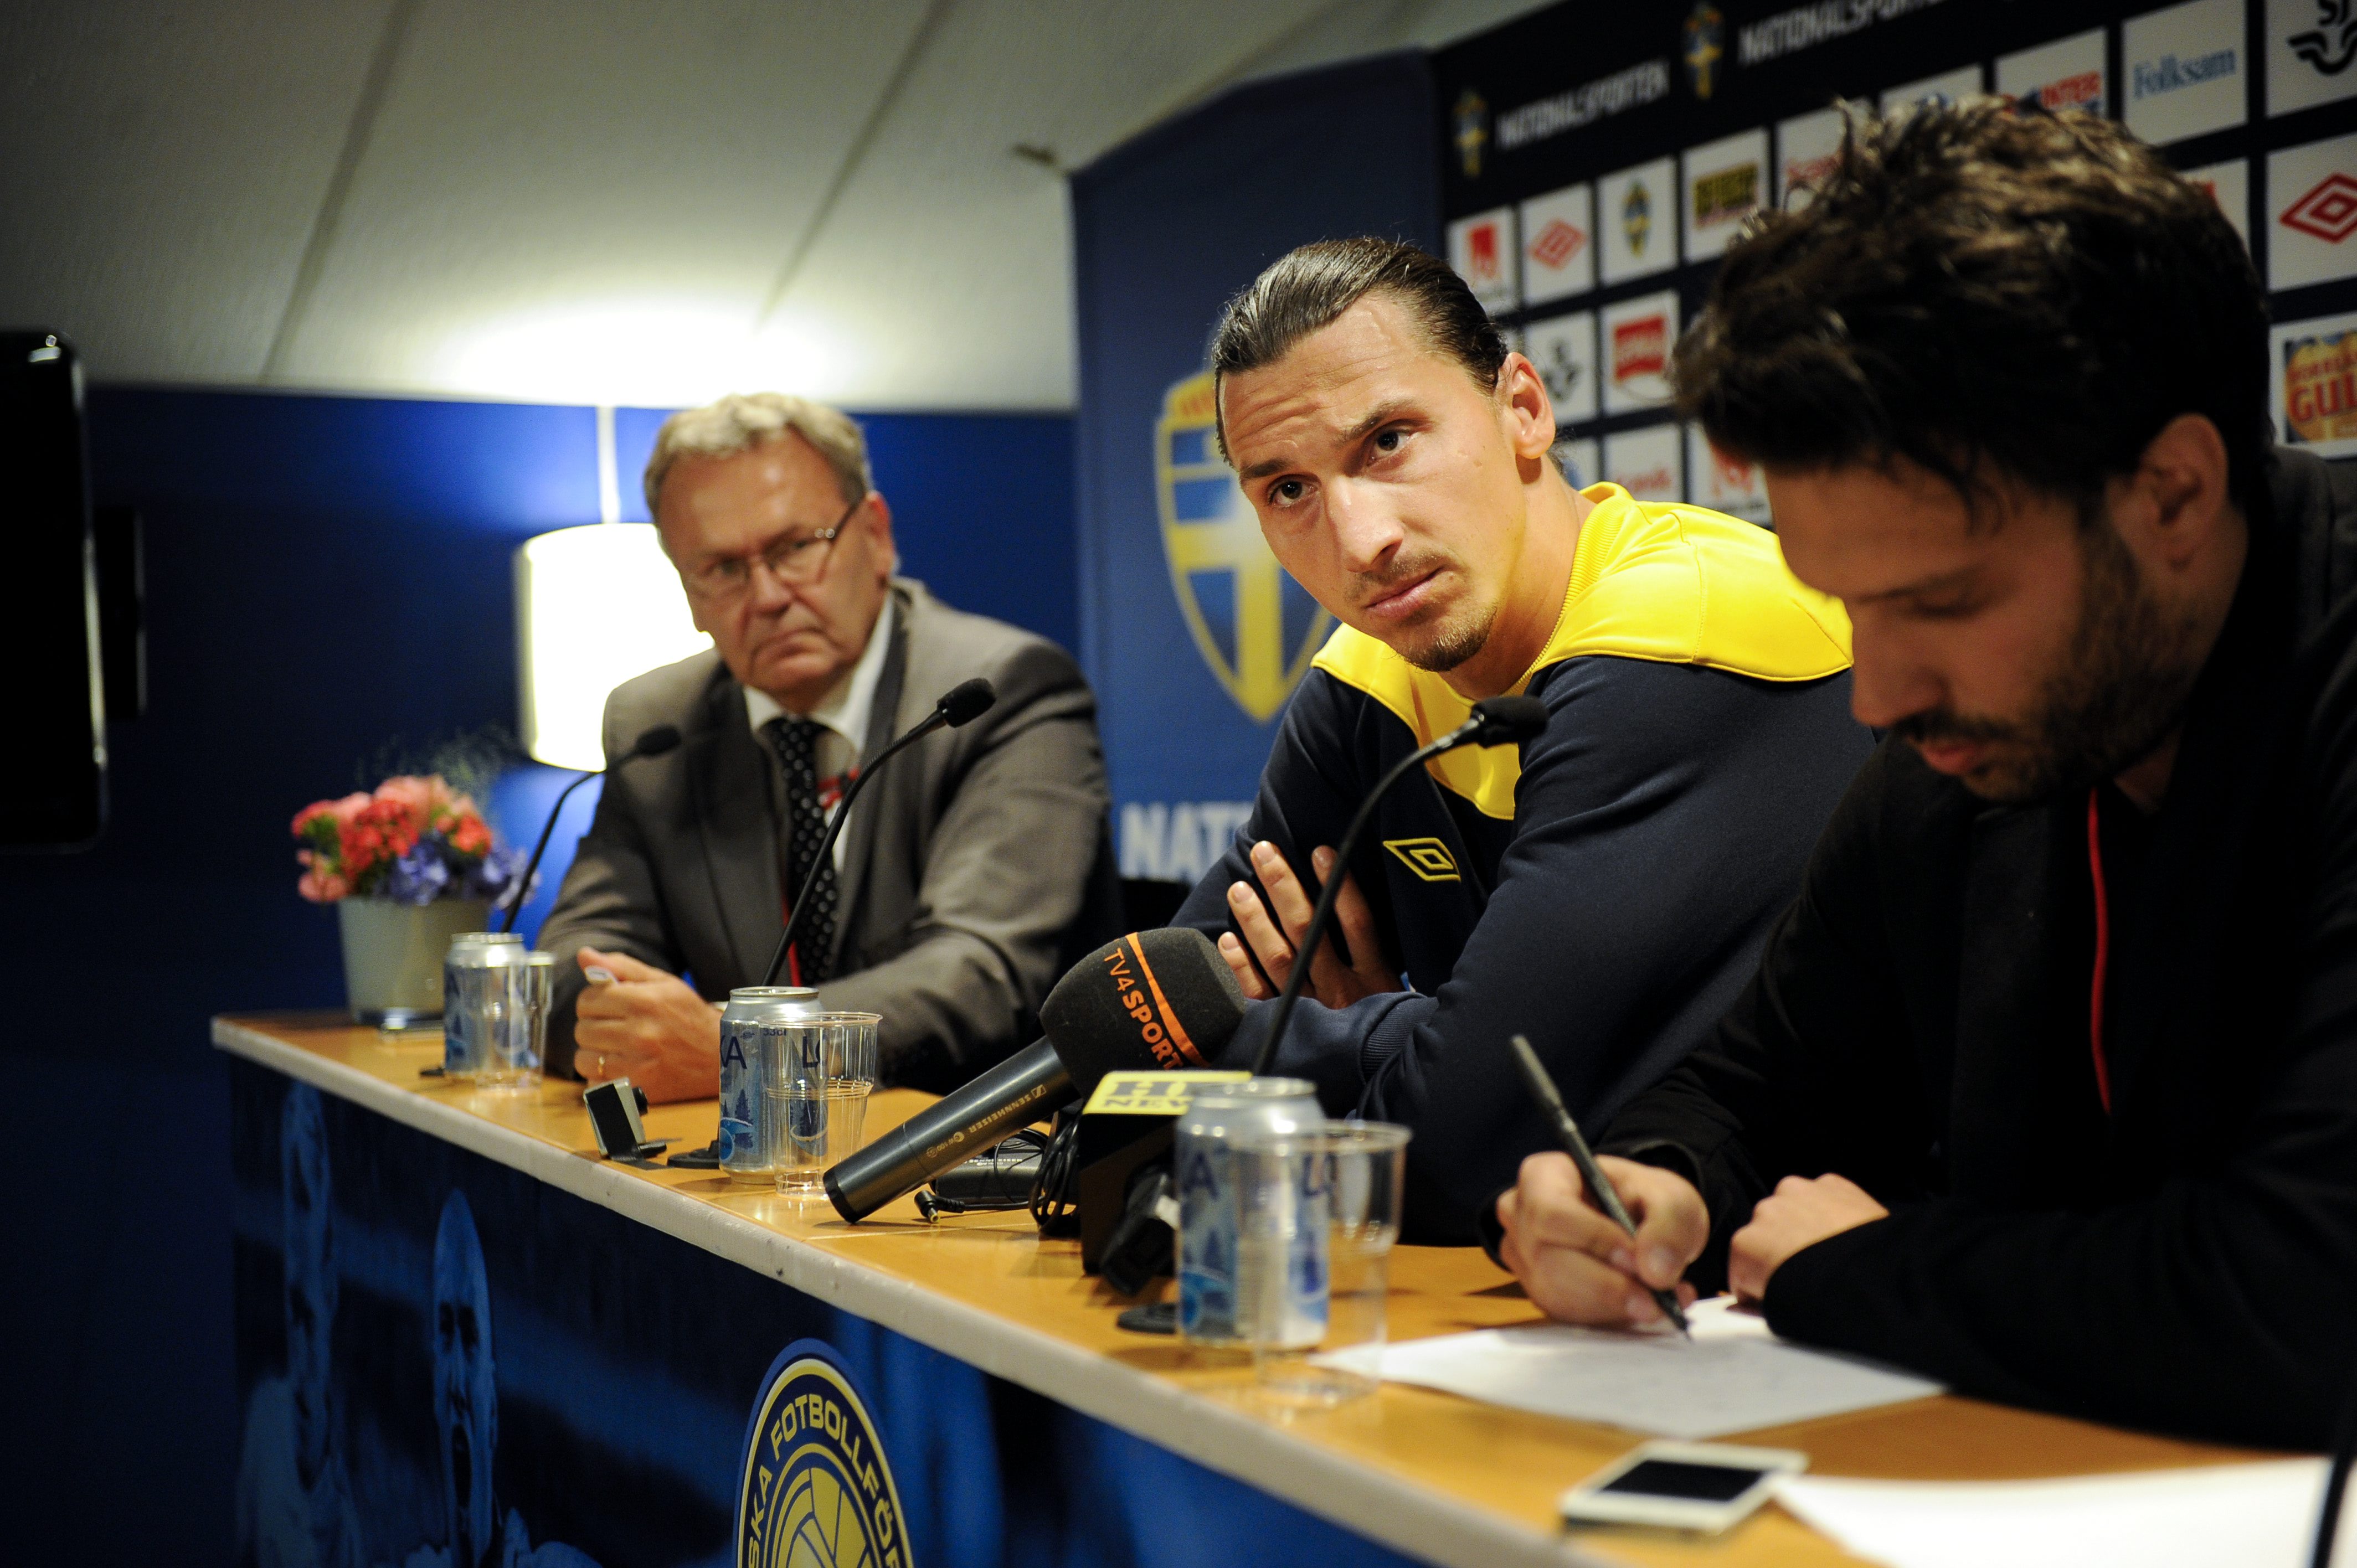 Det finns många rykten ute nu men inget som är sant, sa Zlatan under gårdagens presskonferens.